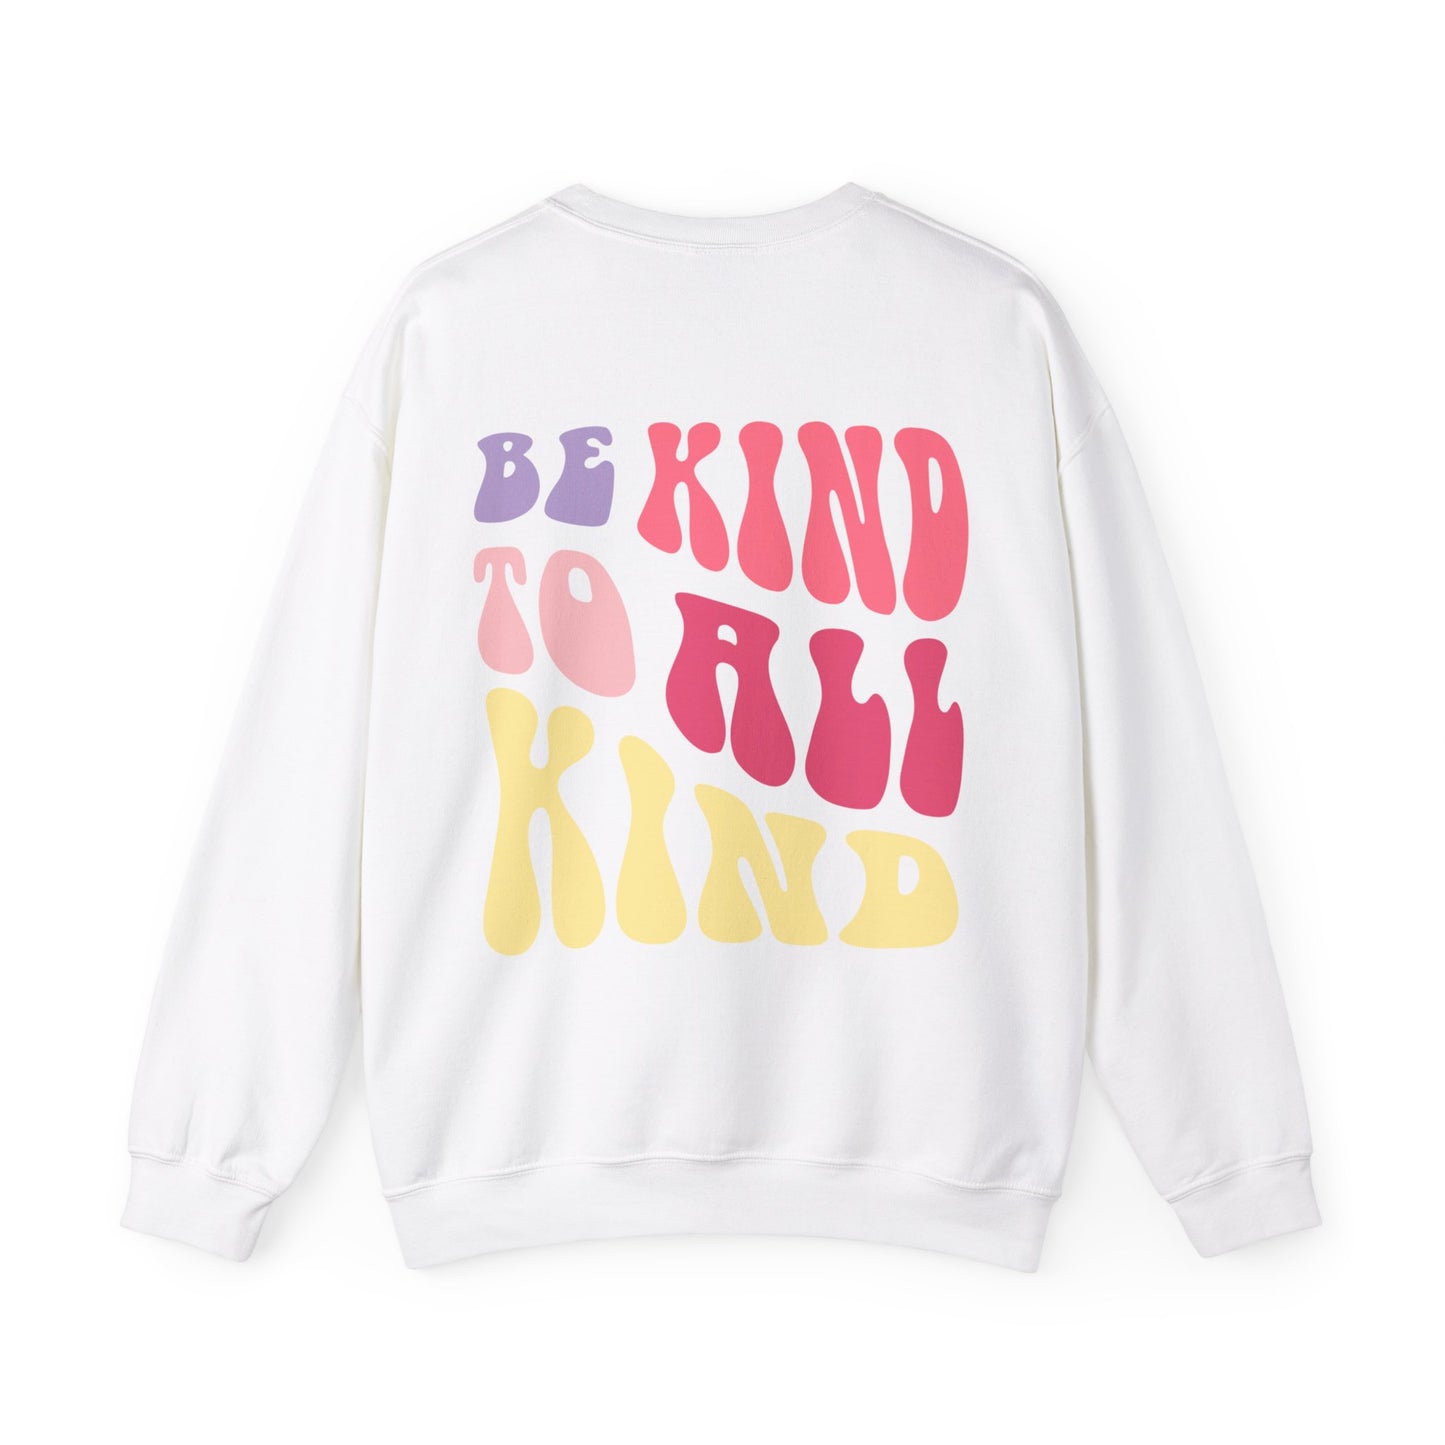 Be Kind, Be You/ Be Kind to All Kind Crewneck Sweatshirt